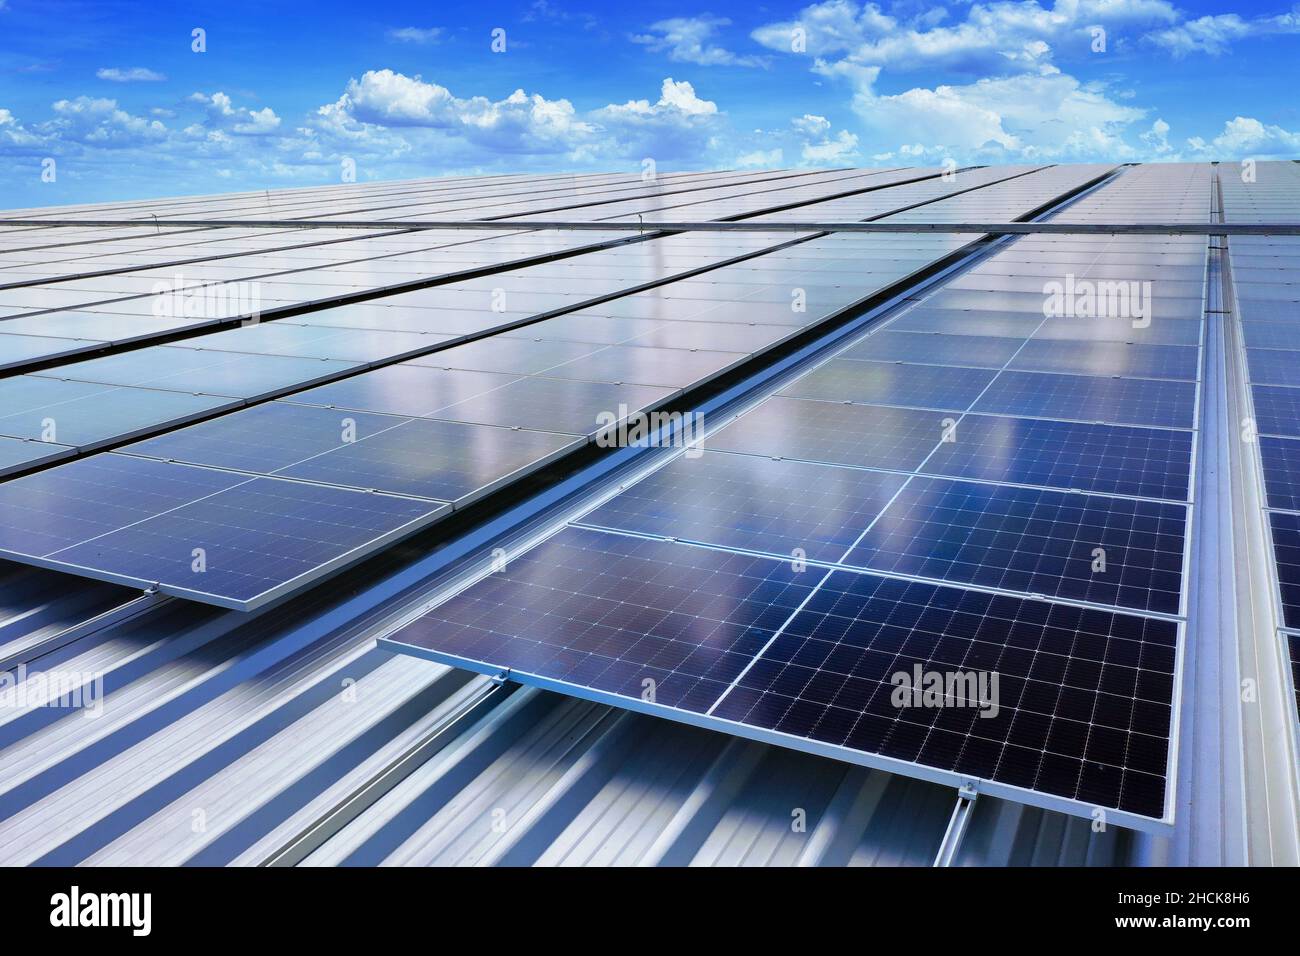 Panneaux solaires sur le toit.(Cellule solaire) Banque D'Images